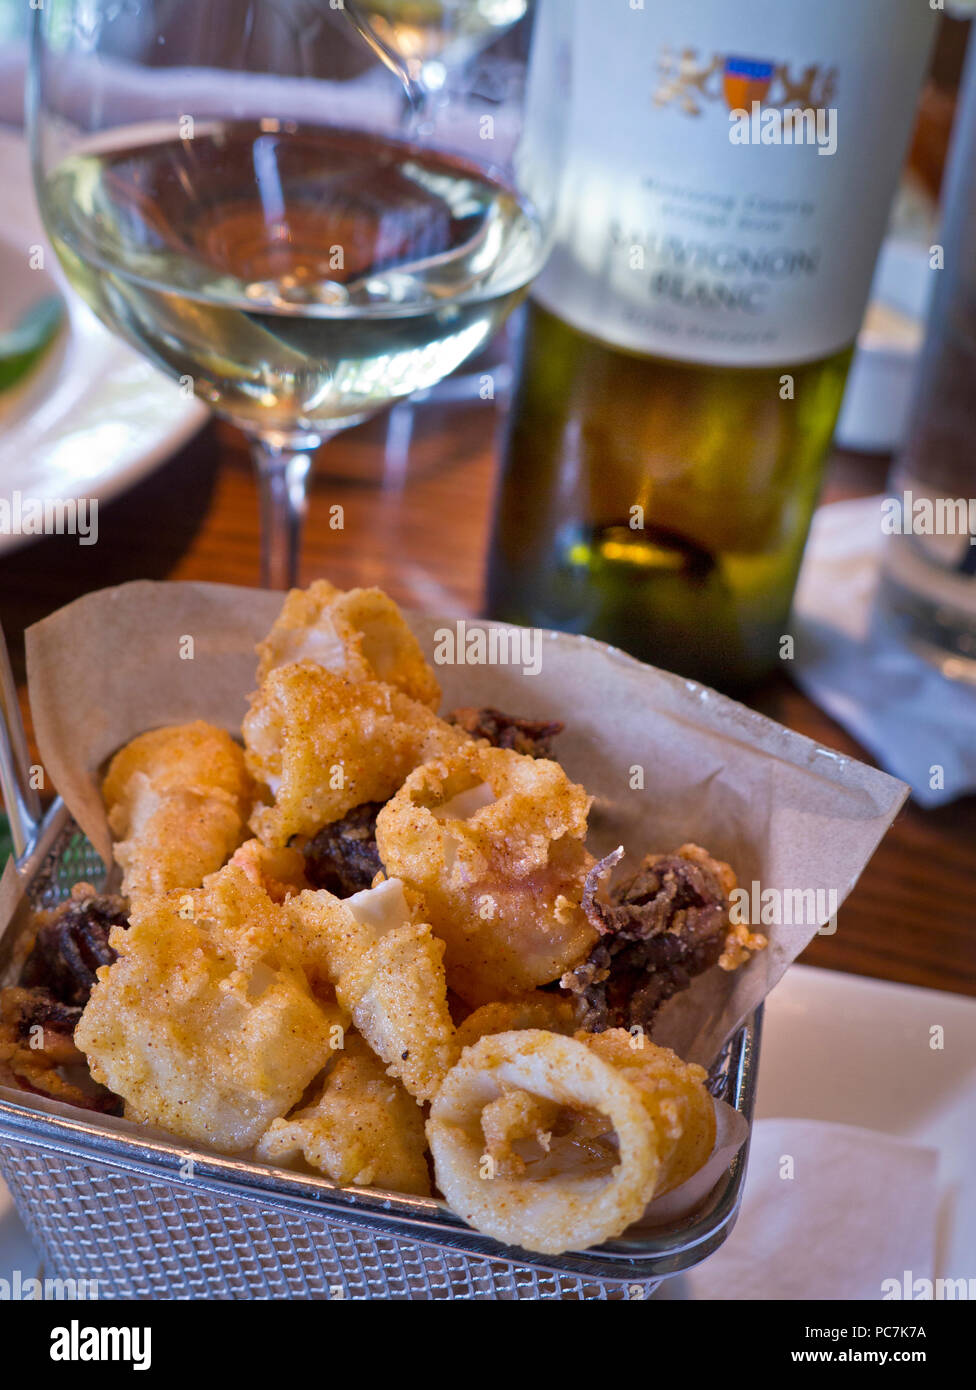 Frittierte calamari Squid tapas Korb mit Glas Weißwein trocken Californa Bernardus Sauvignon Blanc in renommierten Rio Grill Restaurant Carmel, Kalifornien, USA Stockfoto